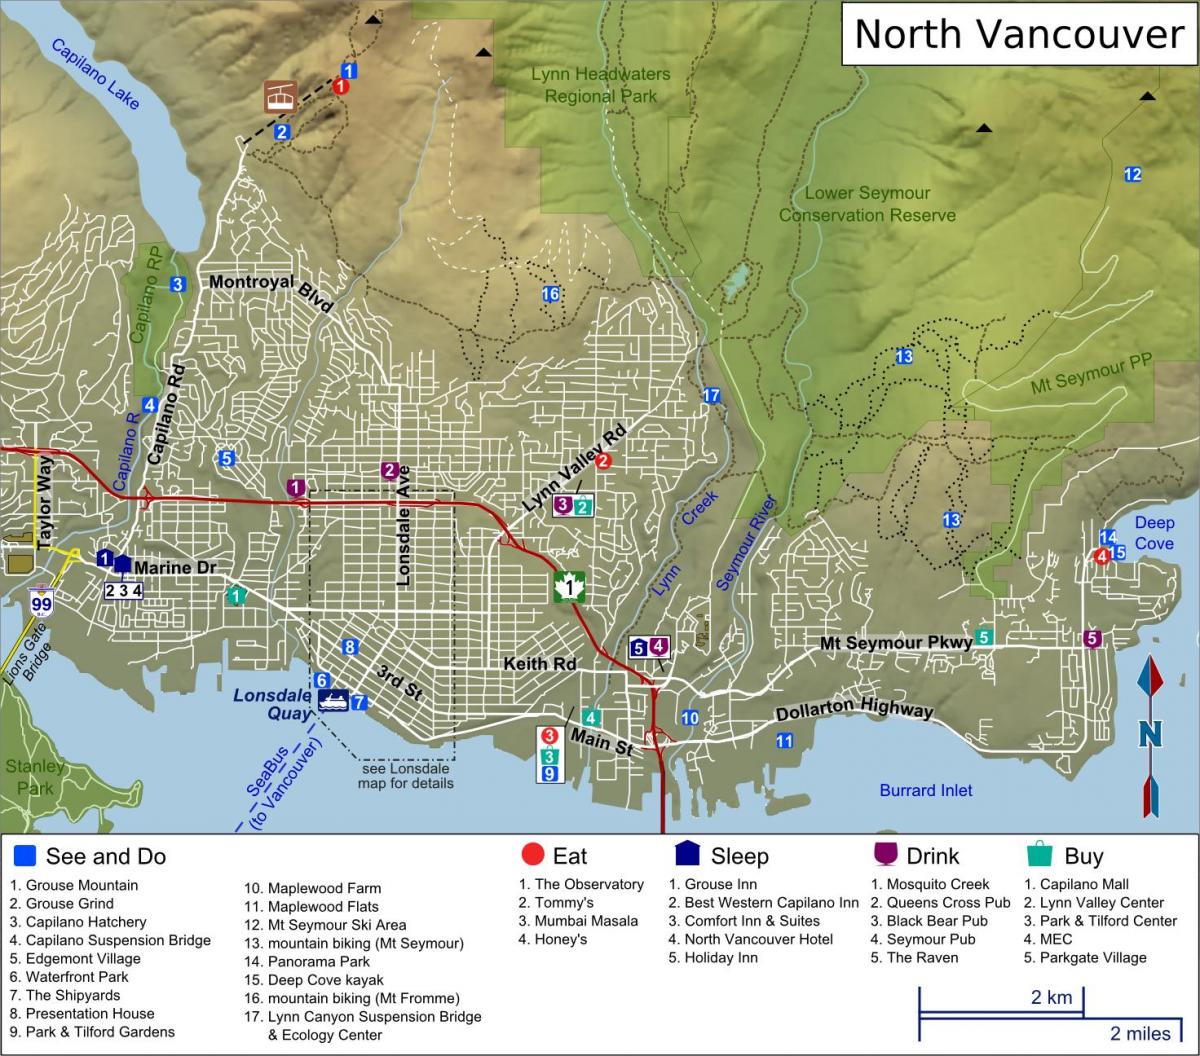 نقشه از نورت ونکوور